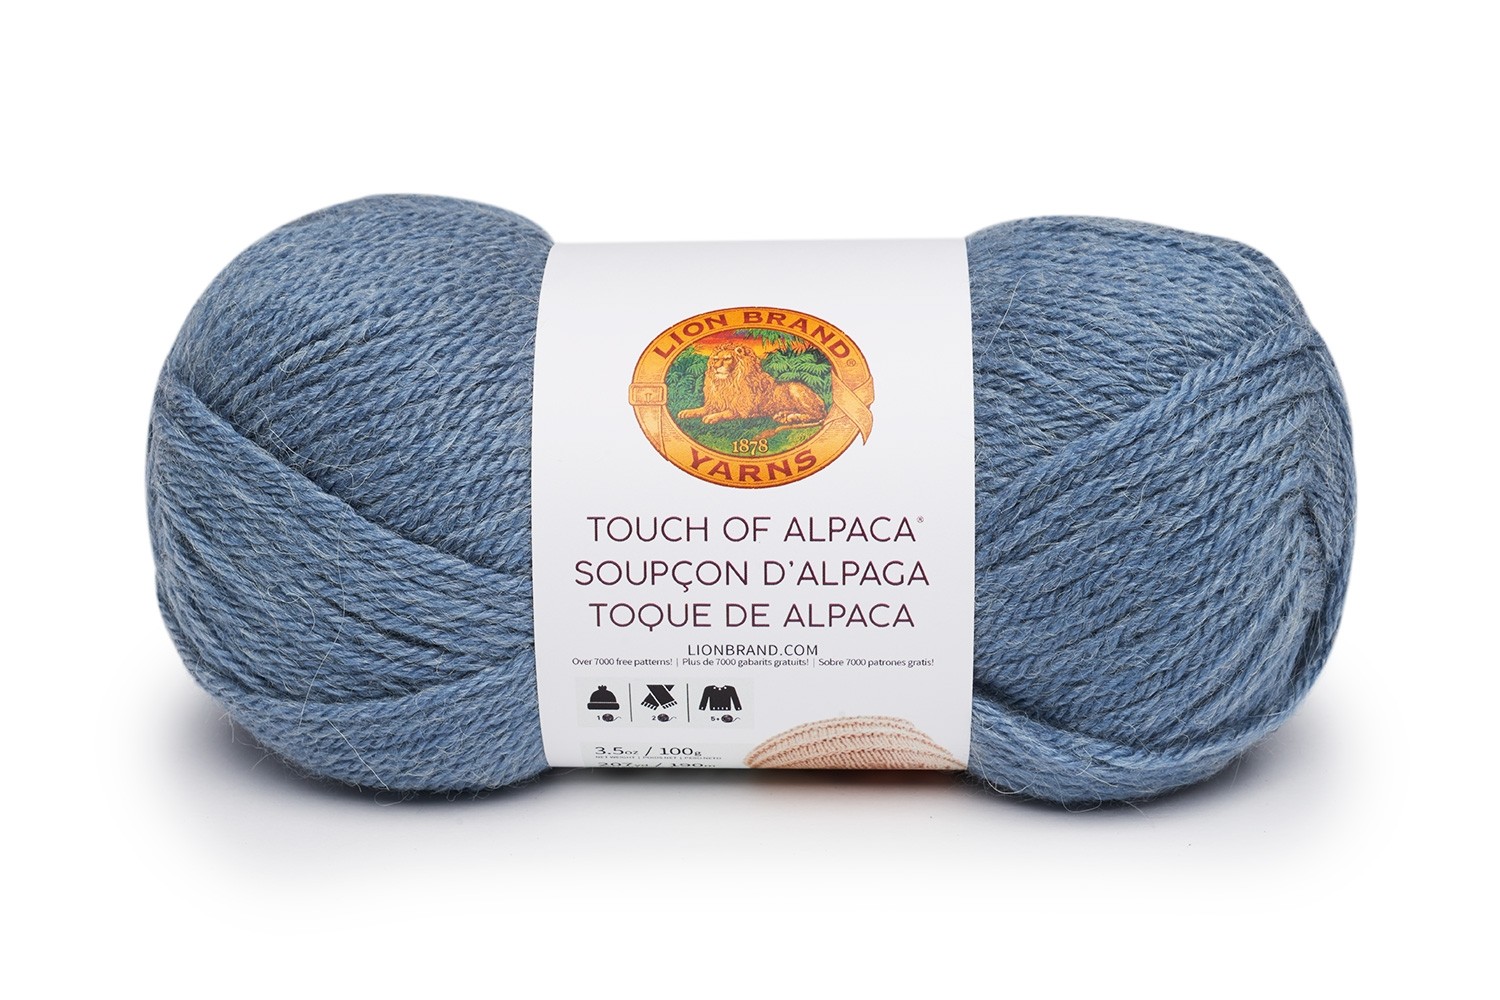 Touch of Alpaca in Dusty Blue